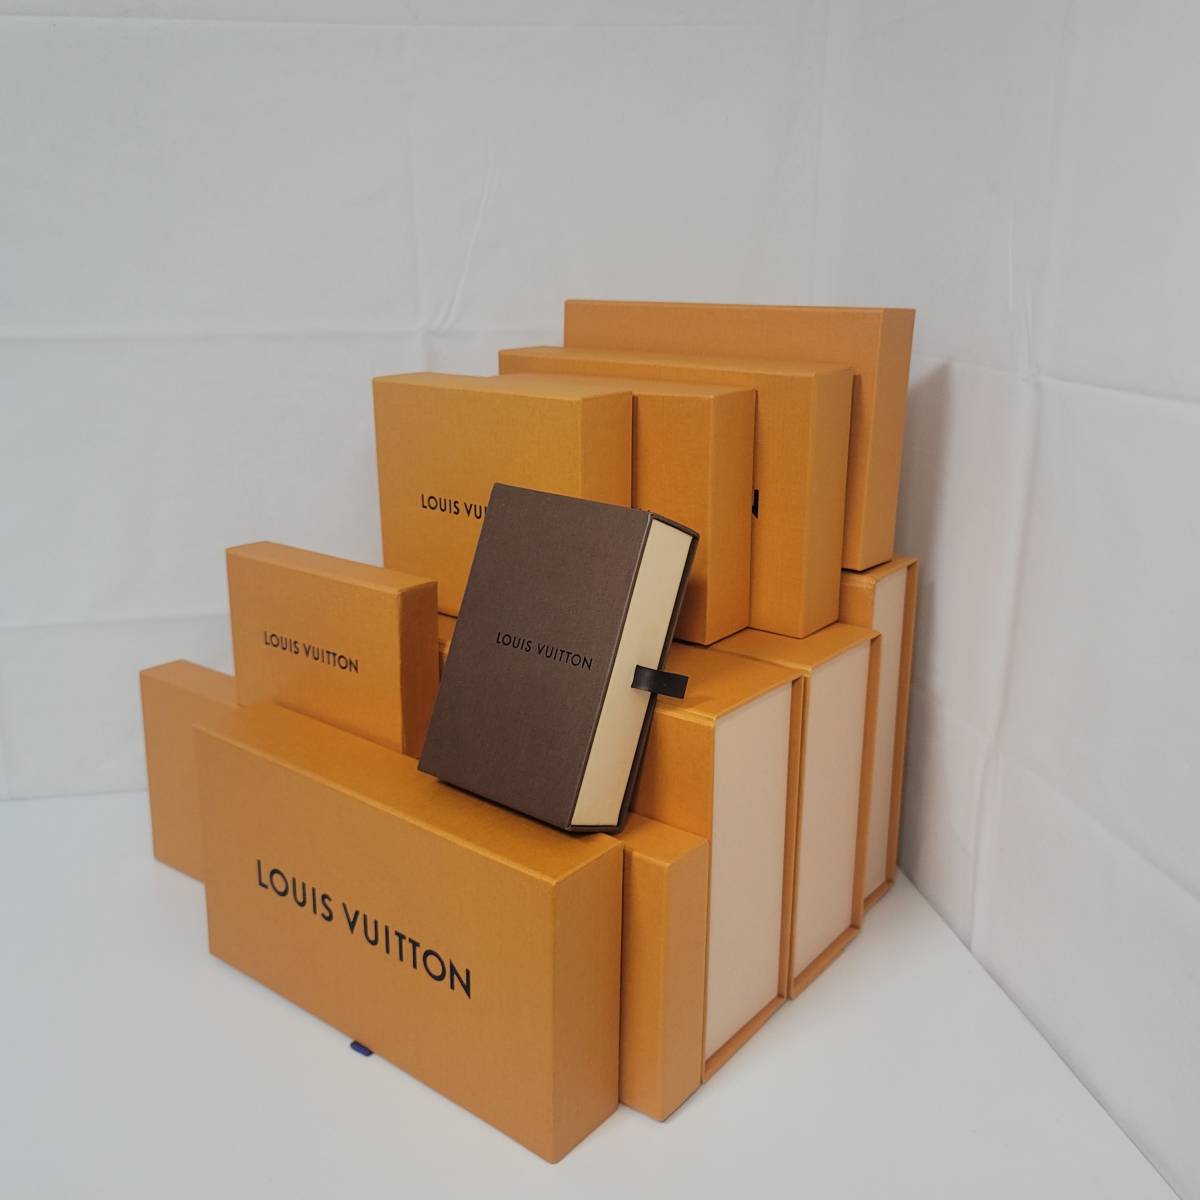 ルイヴィトン Louis Vuitton 化粧箱 11箱セット マグネット ギフトボックス 空箱 BOX 空き箱 箱 ケース 純正BOX モノグラム ダミエ・ライン